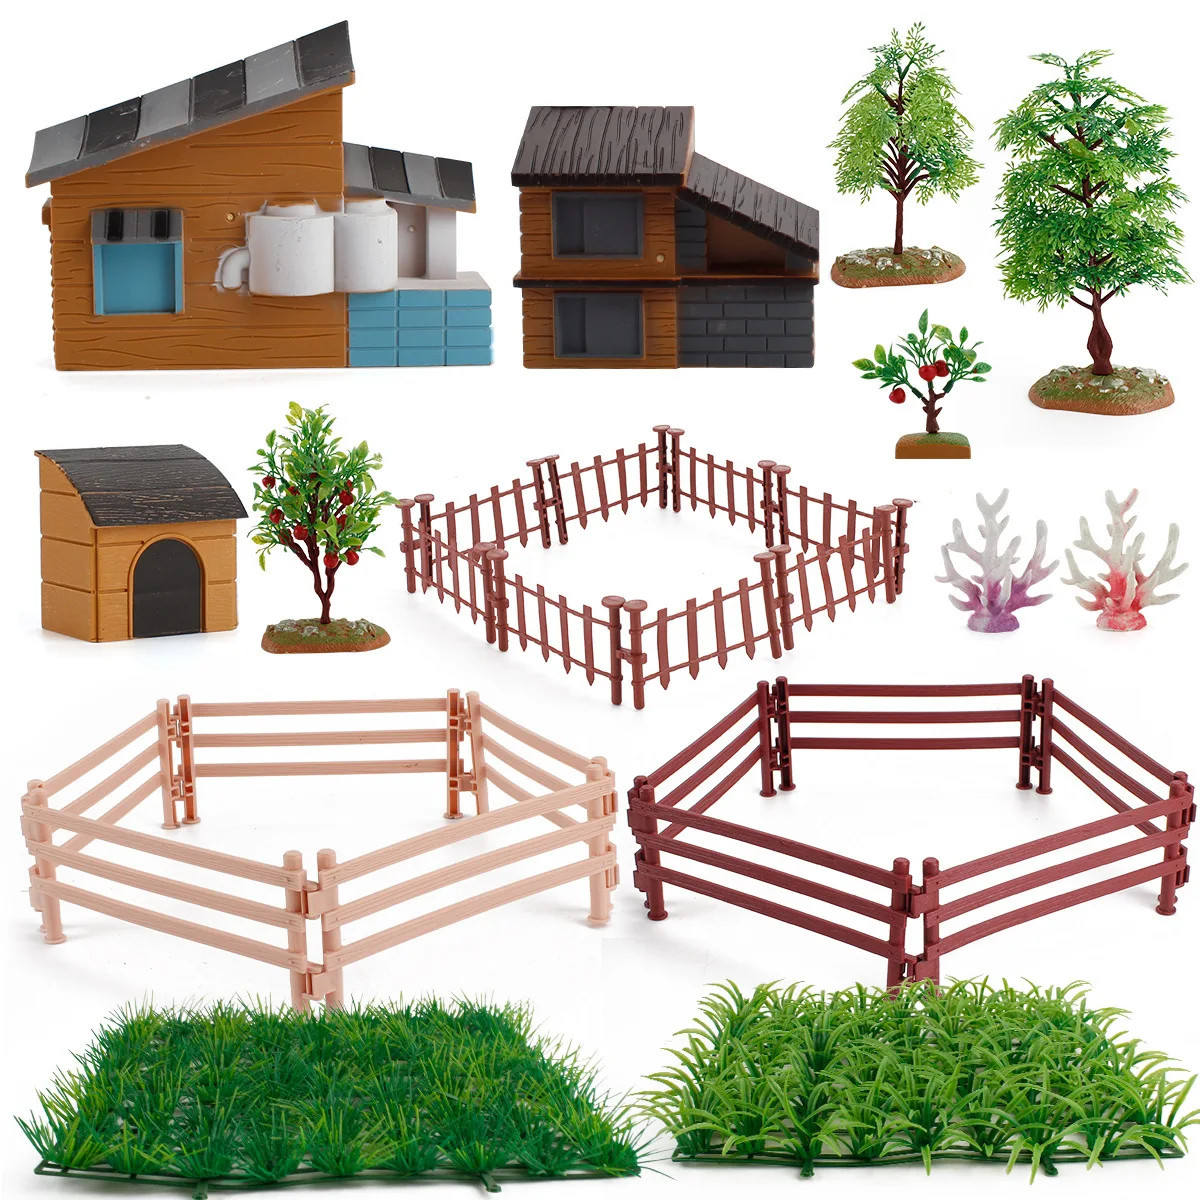 
 Имитация фермы, кабины, домика, корпус для животных и растений, сборка «сделай сам», стол с песком, модель для сцены, игрушка  